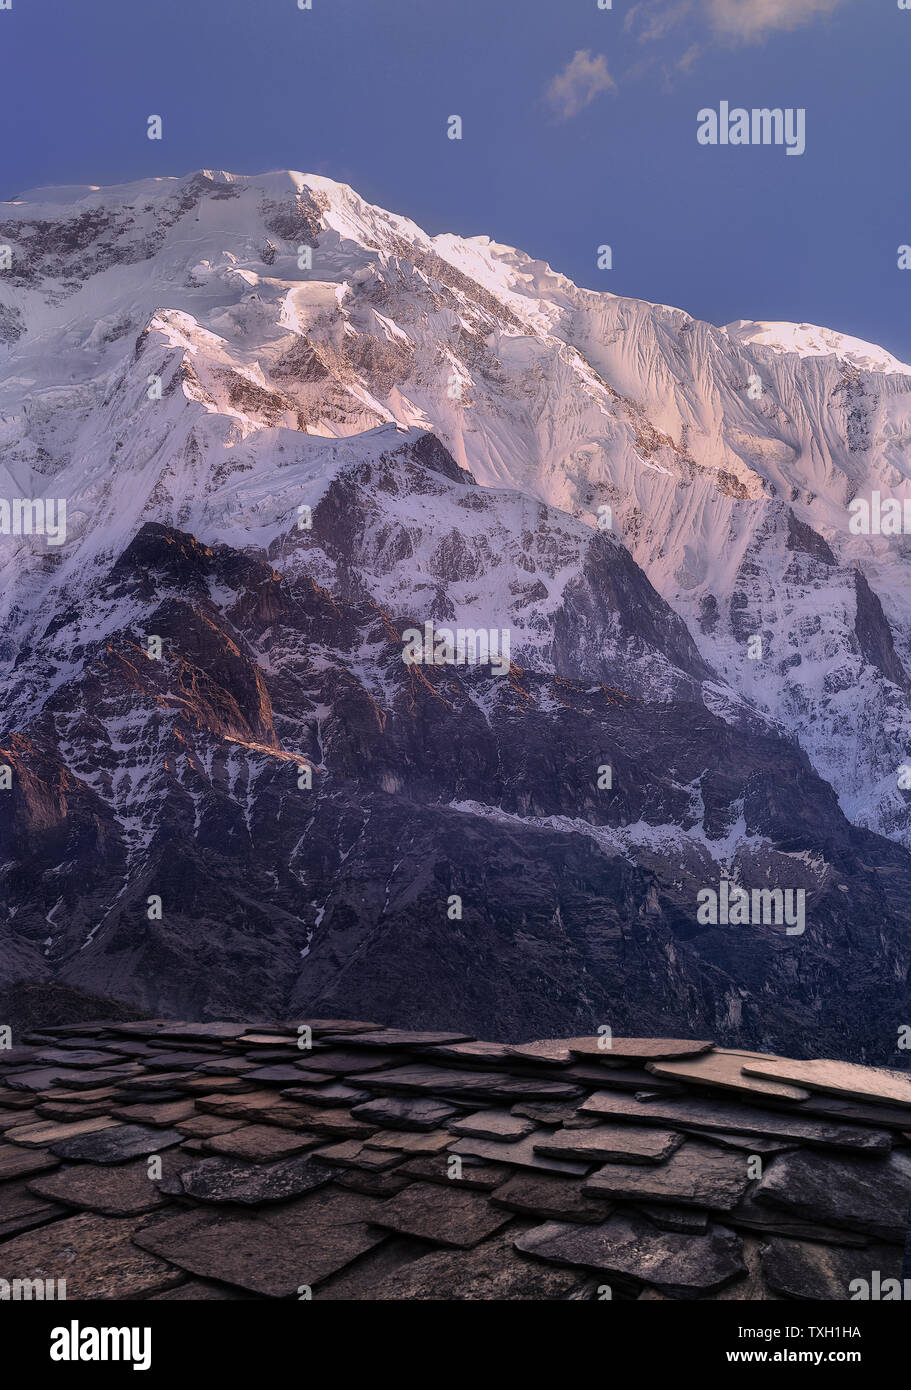 Blick auf die Gletscher der Alpen in den chilenischen Anden in den Strahlen der aufgehenden Sonne. Kalten Ton. Stockfoto